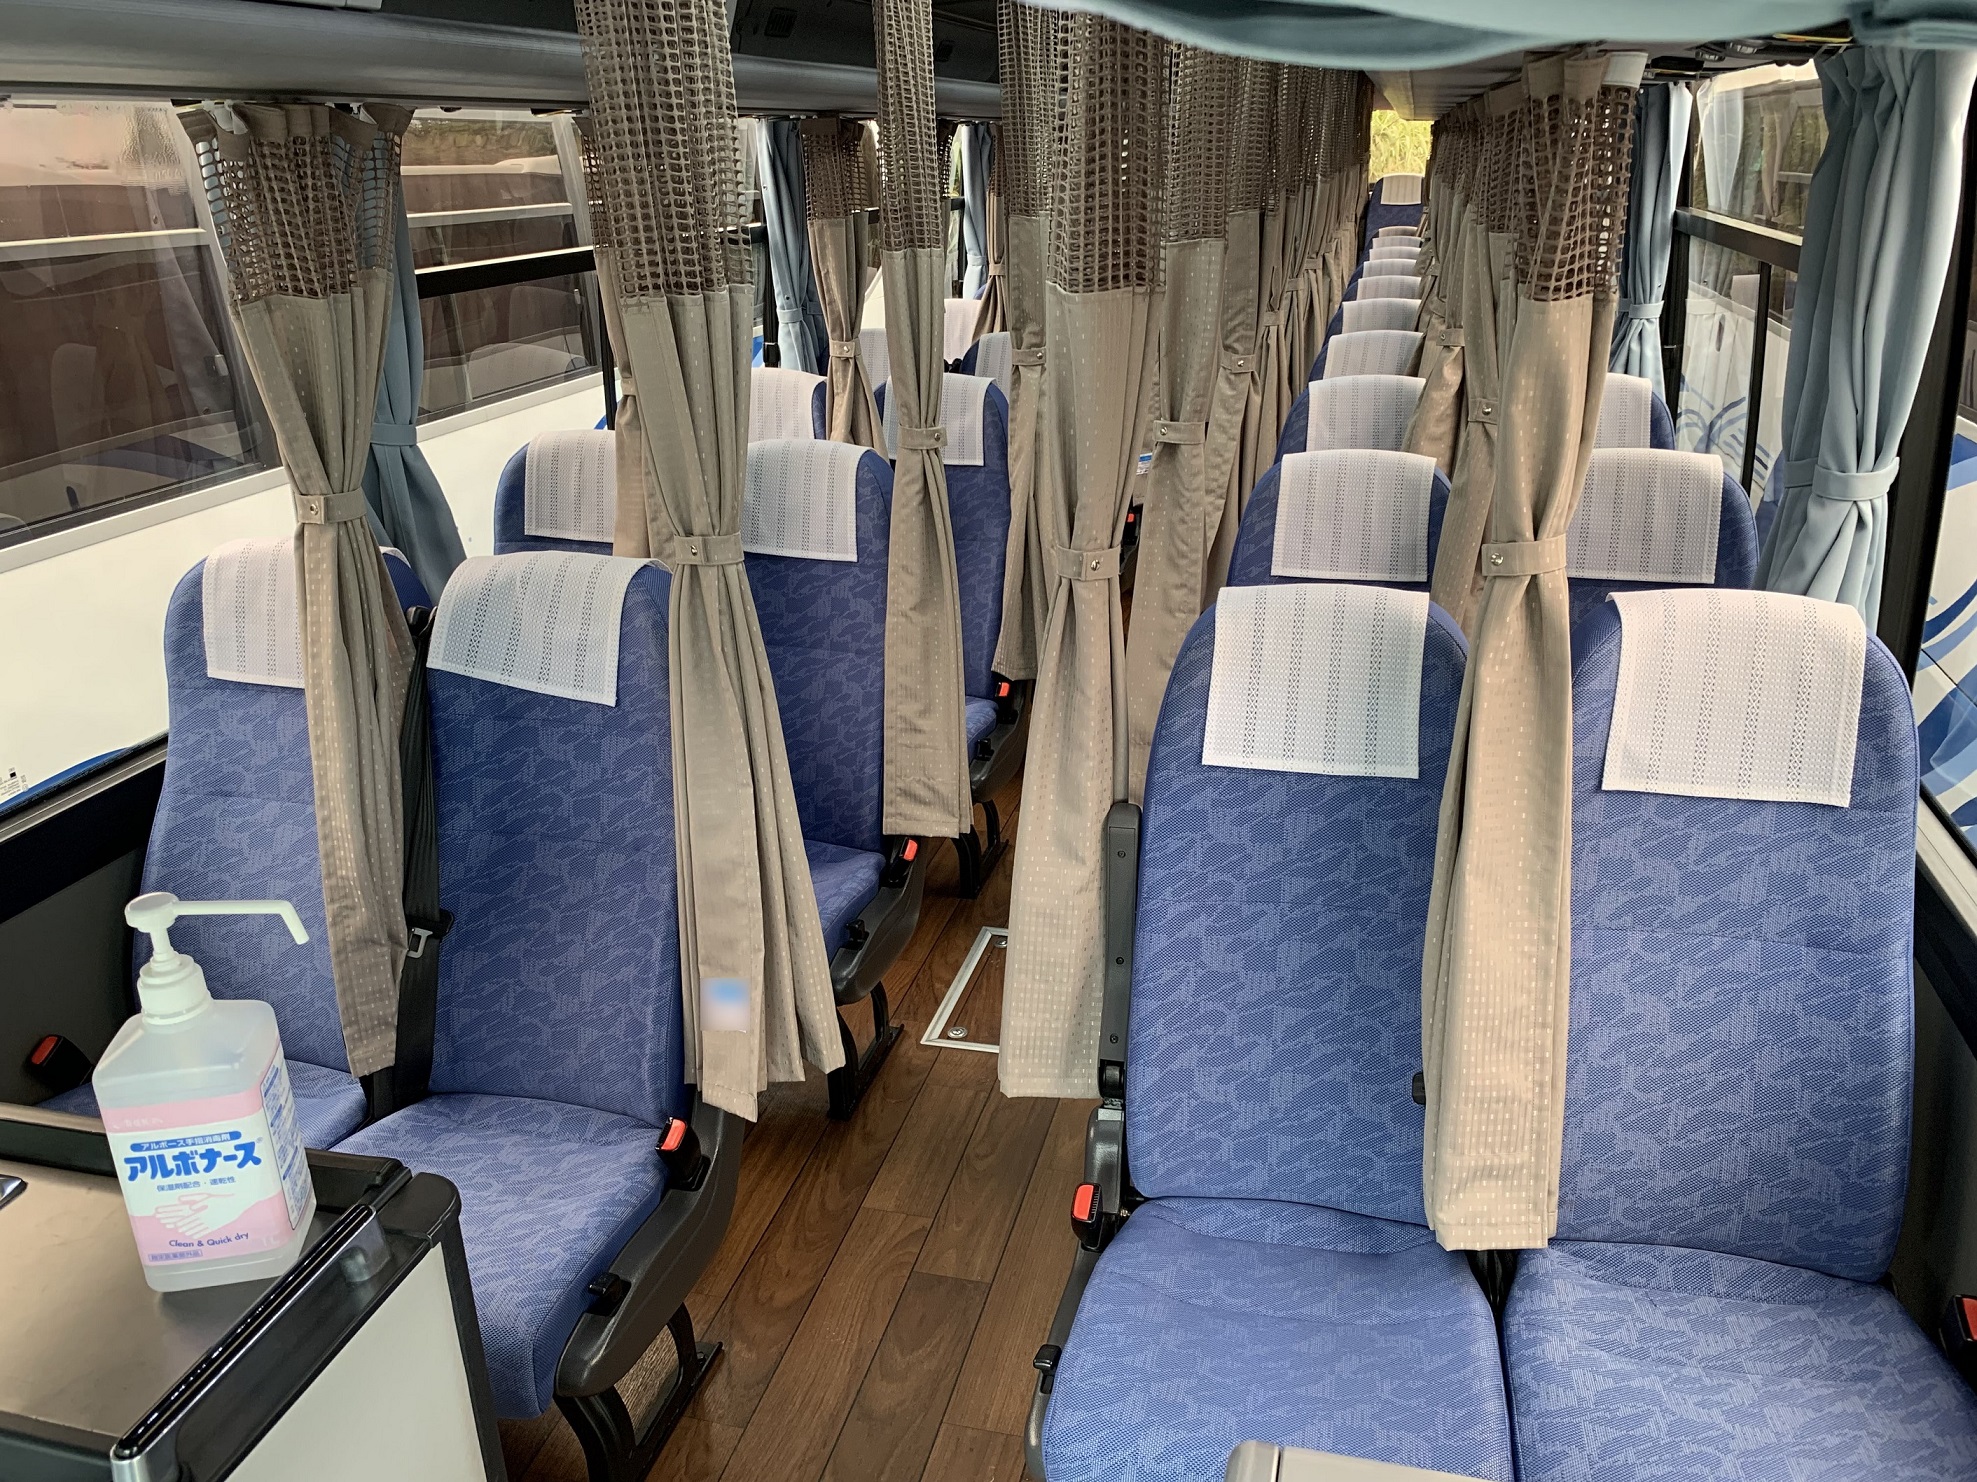 高速乗合バス業界初 地域の利便性のさらなる向上へ 千葉 房総地区と関西地区を結ぶ高速乗合バス 21年12月より運行開始 シダックスグループ